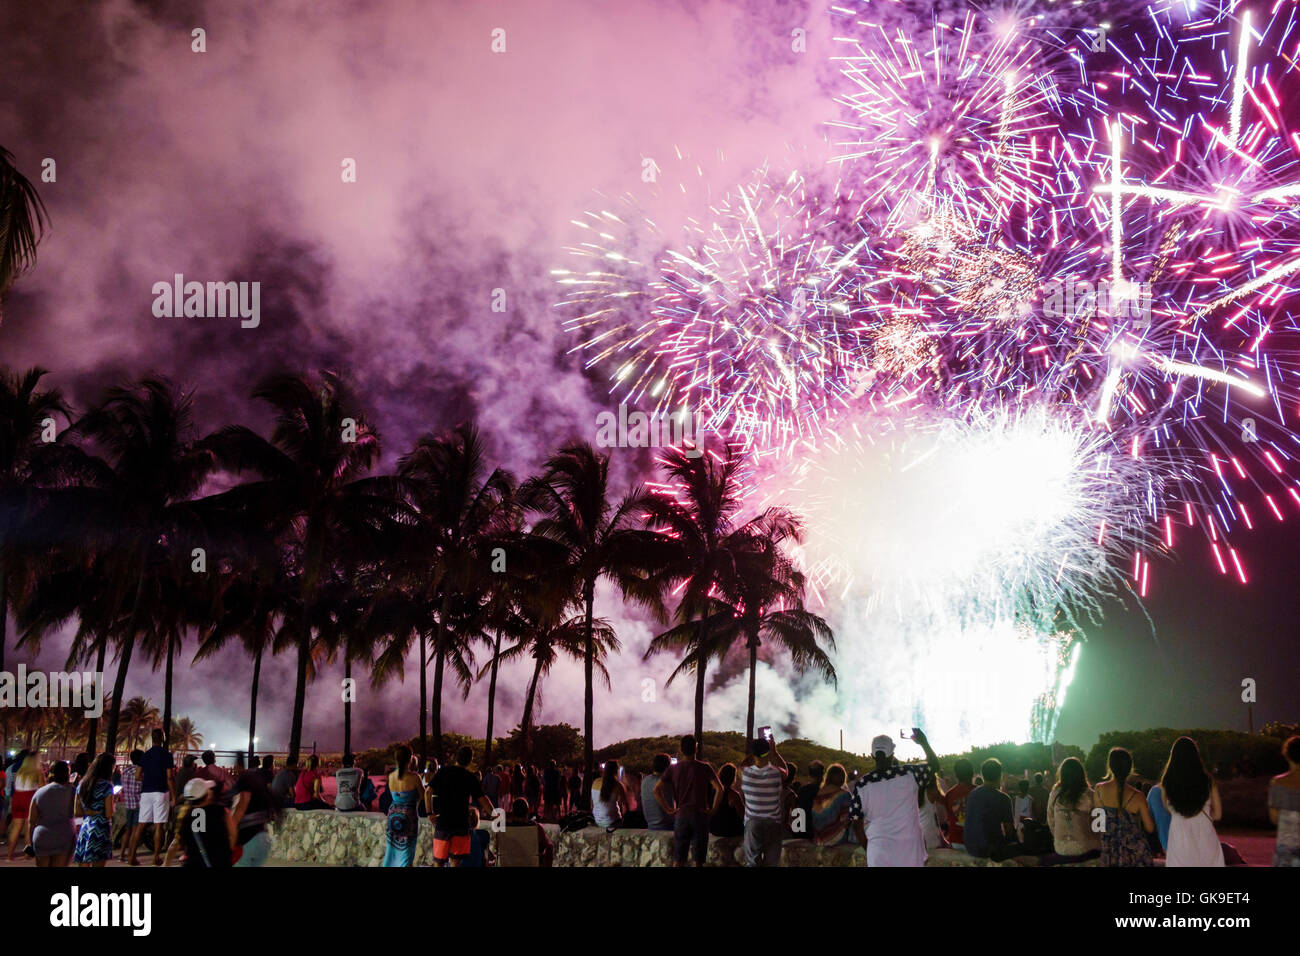 Miami Beach Florida, South Beach, Lummus Park, 4 luglio, Independence Day, vacanza, celebrazione, spettacoli pirotecnici, palme da cocco, fumo, patrioti Foto Stock